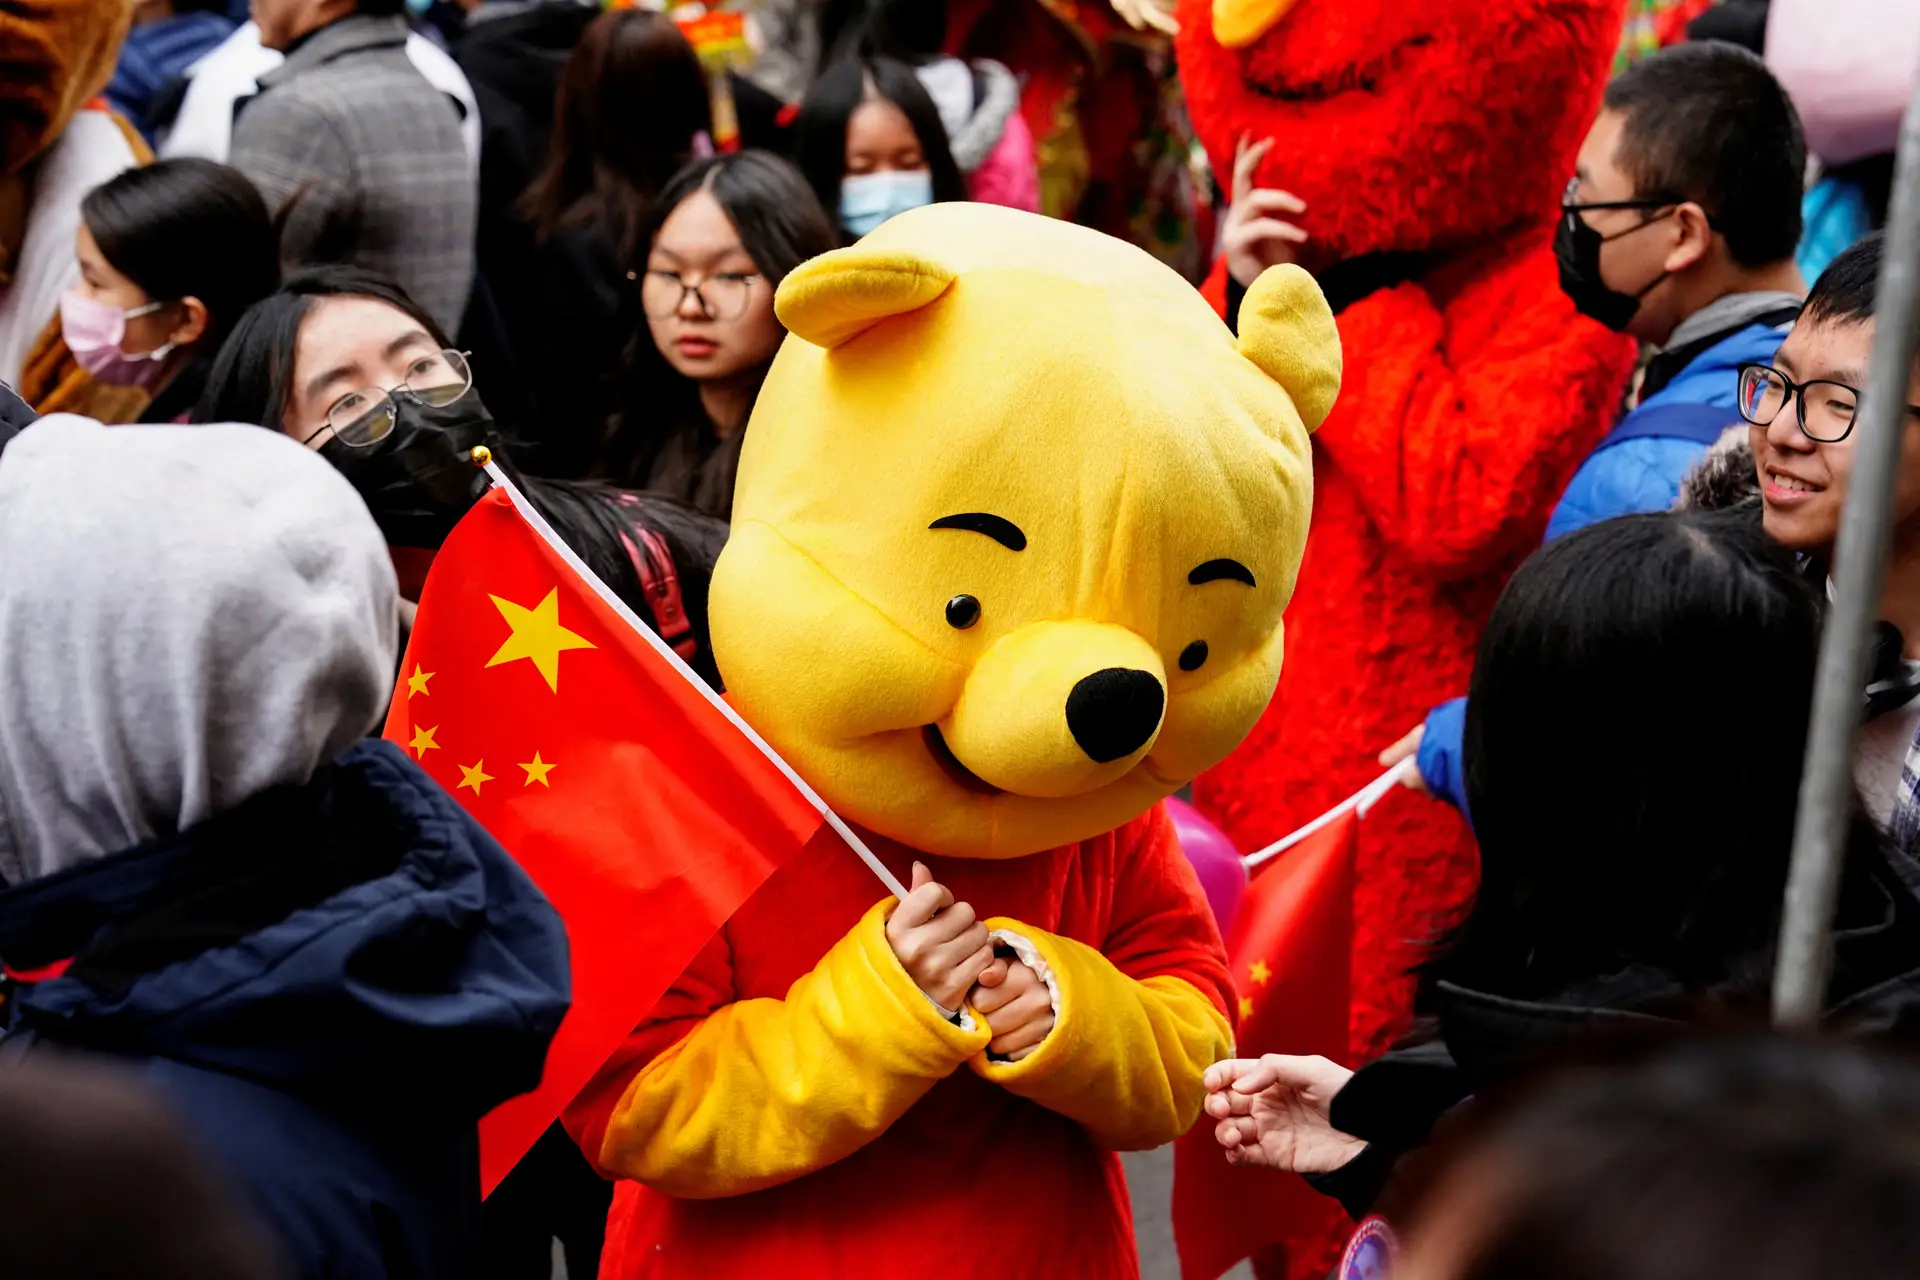 Filme de terror sangrento com Ursinho Pooh foi cancelado em Hong Kong